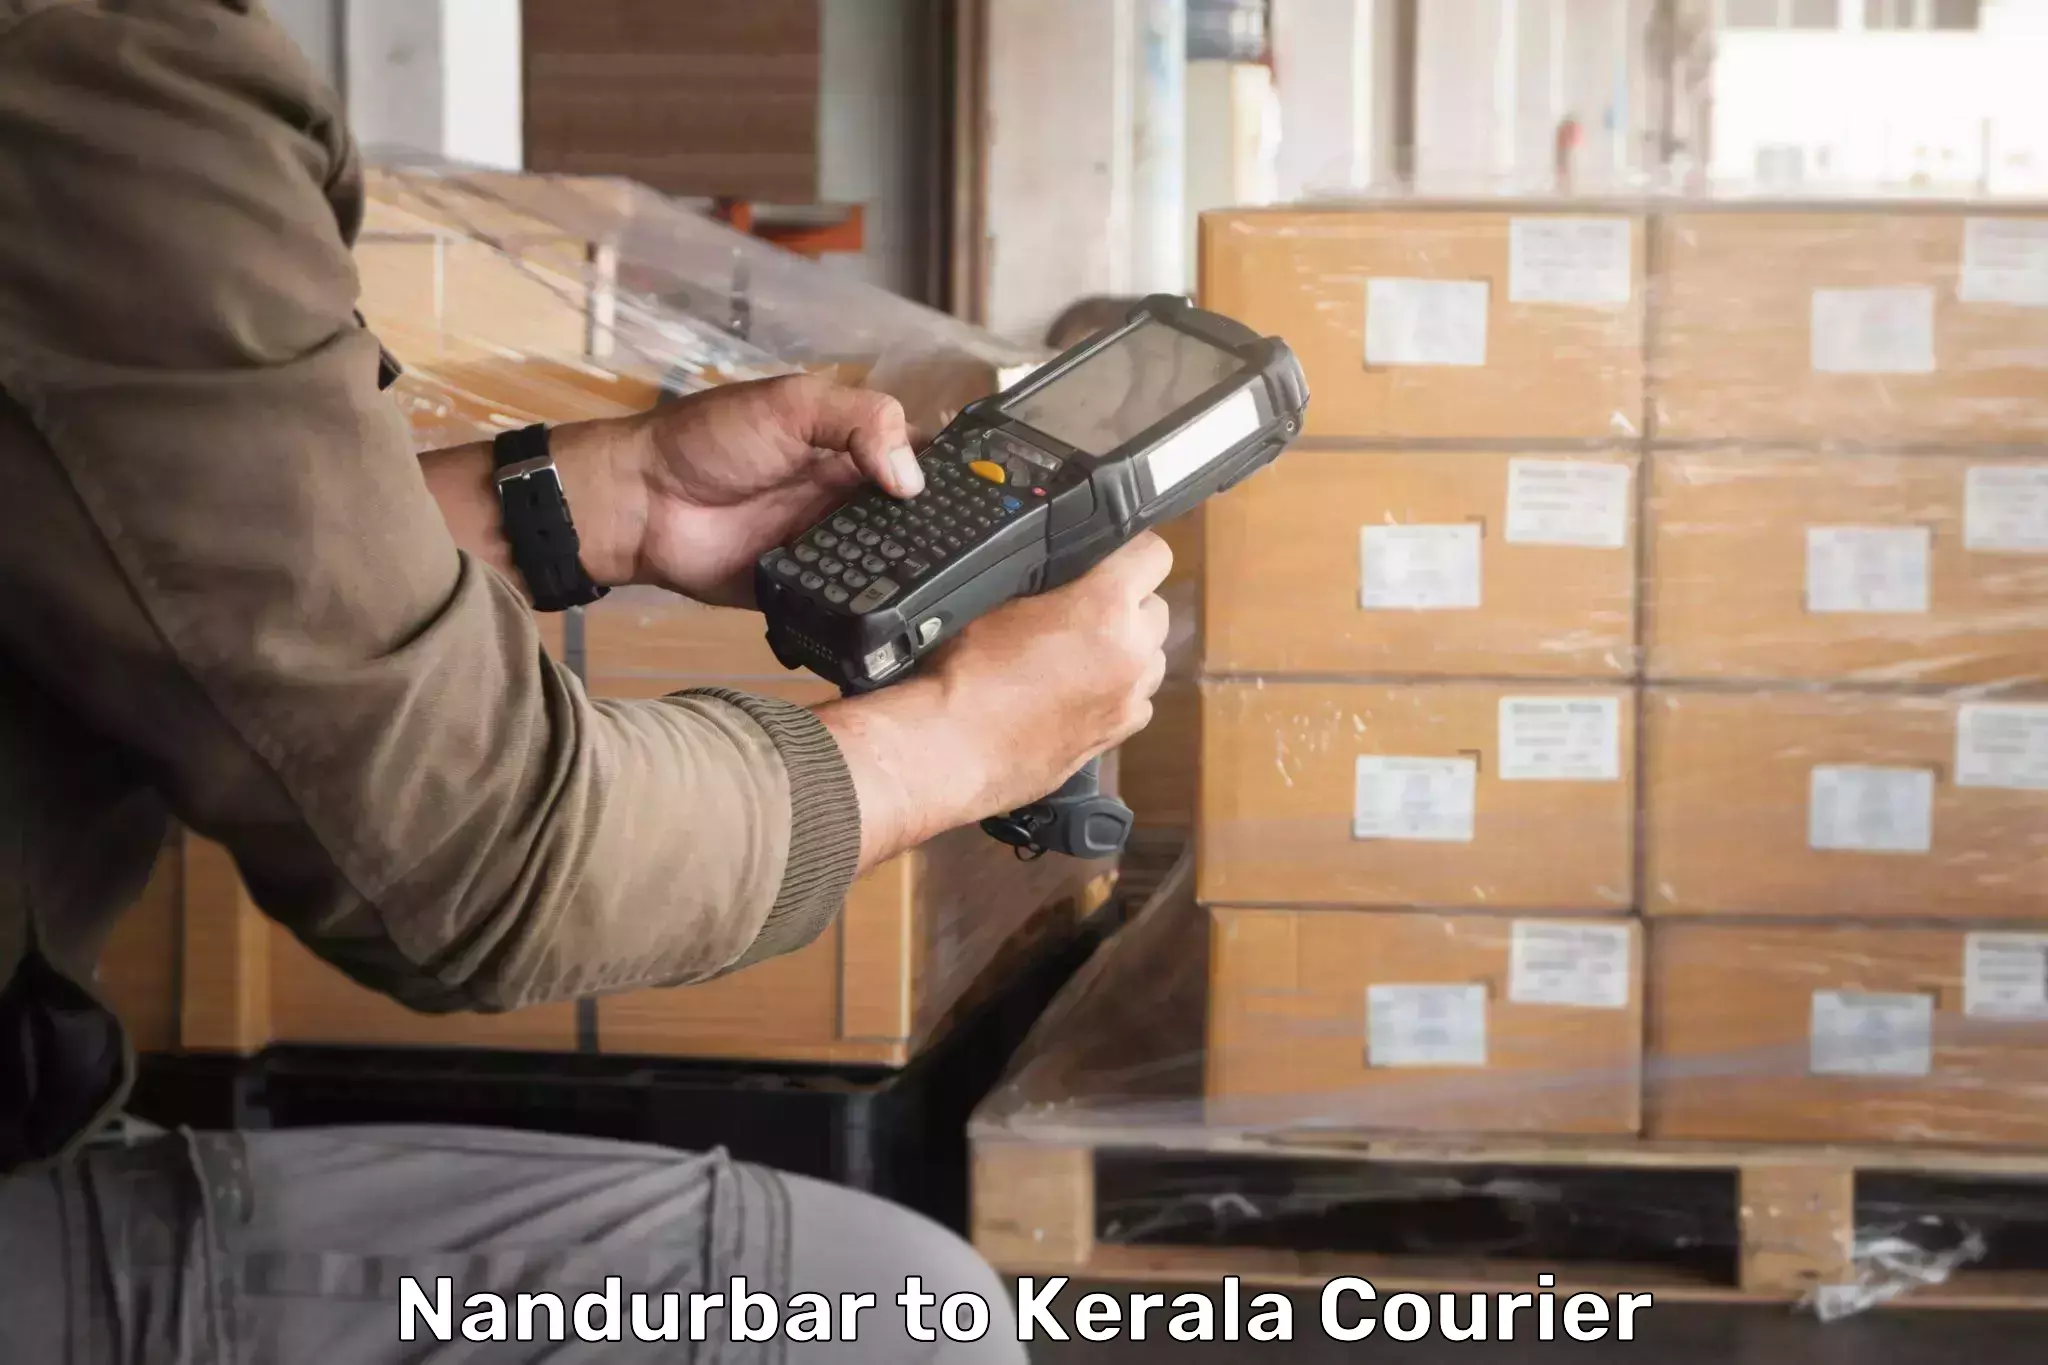 Digital courier platforms Nandurbar to Thrissur